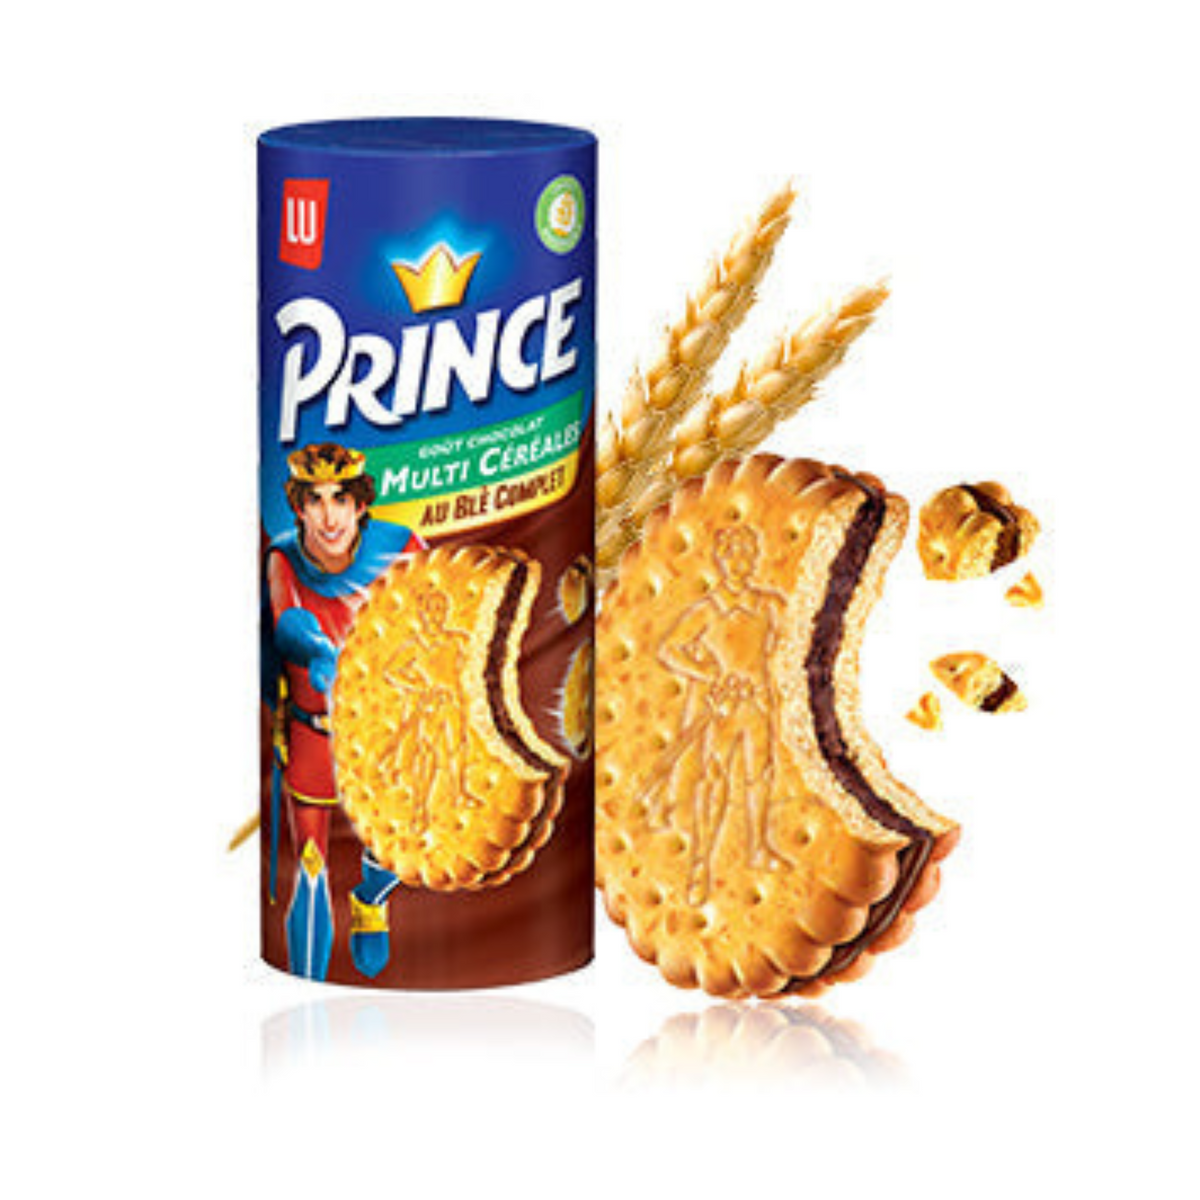 Découvrez un délicieux biscuit Prince au bon goût Lait Choco. Prince Goût Lait Choco est un biscuit au blé complet adapté au goûter, pour le plaisir des enfants et de leurs mamans !